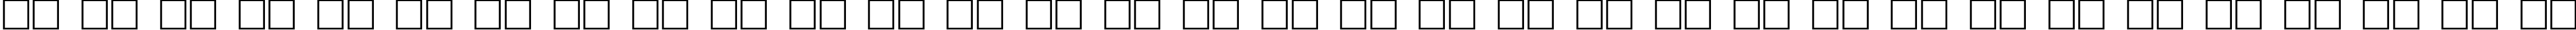 Пример написания русского алфавита шрифтом Grids n Things 2